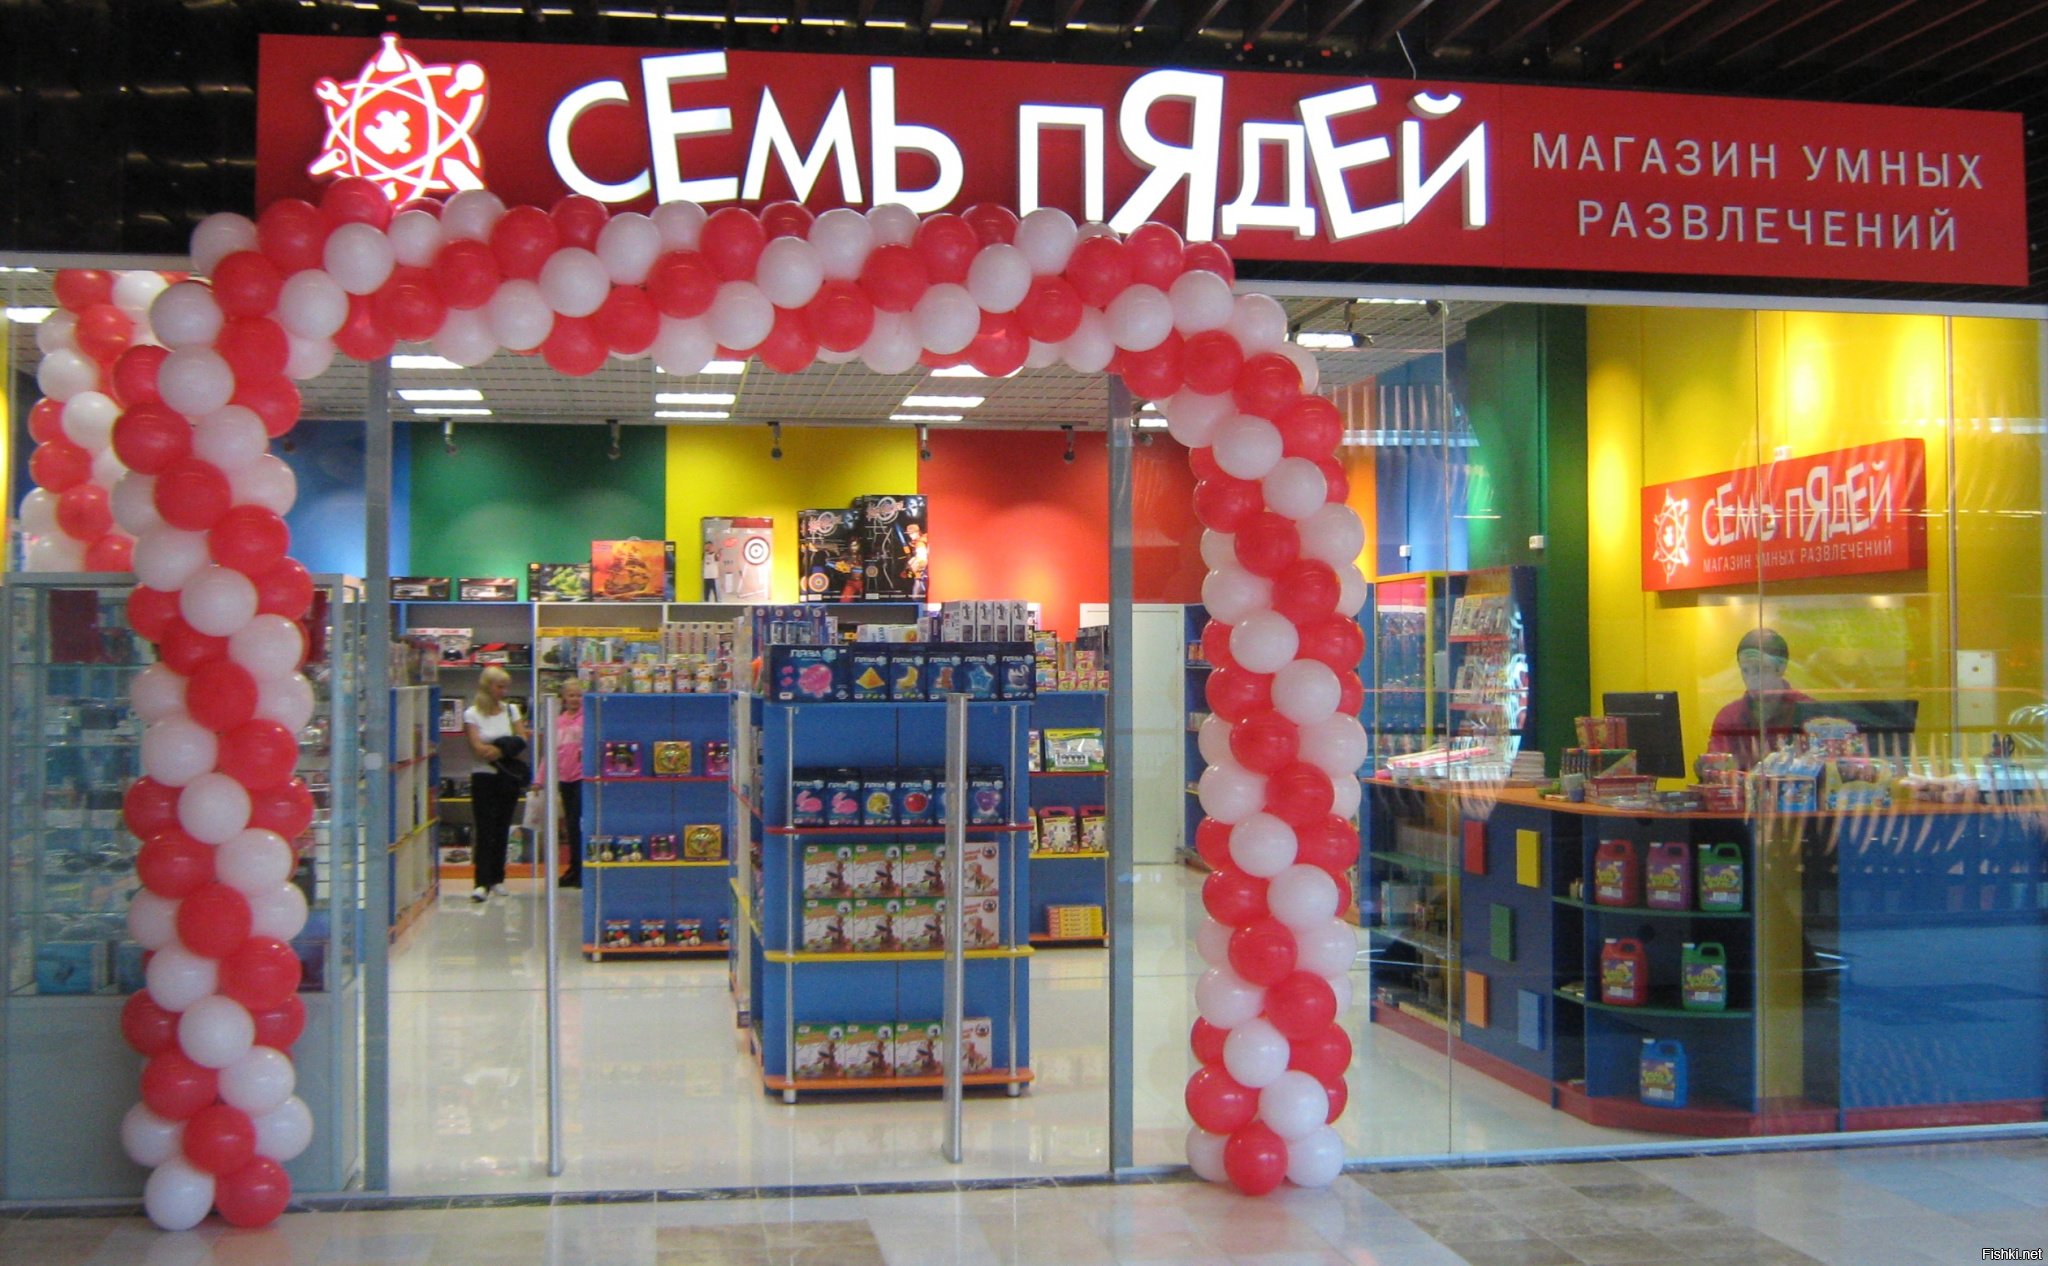 Сеть развлечений. 7 Пядей магазин. Магазин семь пядей в Москве. Семь пядей магазин умных развлечений. Магазин безумных развлечений семь.